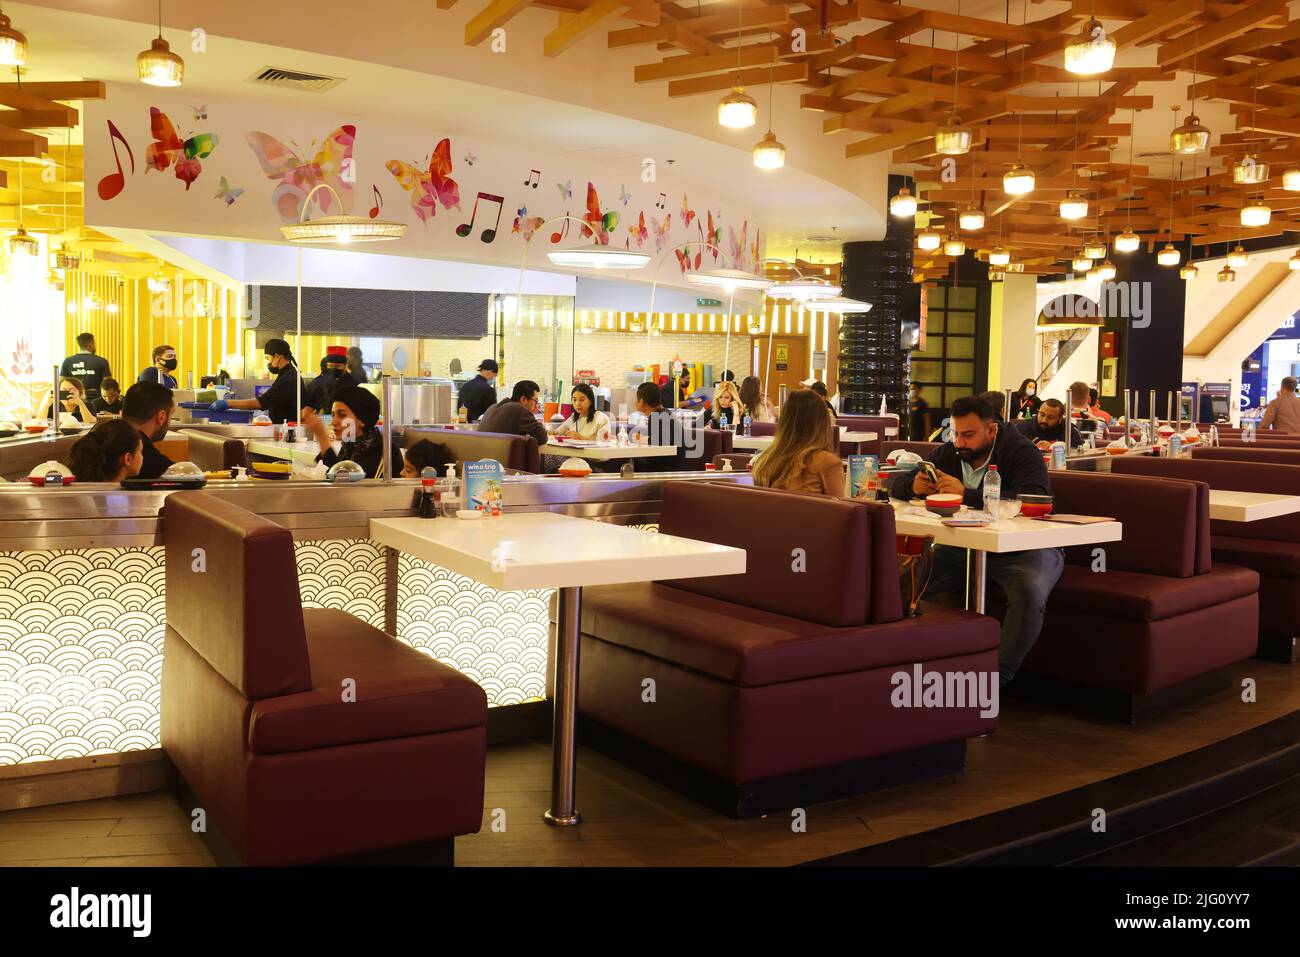 Dubai Mall, Cafe, Bar, Skybar, Cocktail, Dubai,  moderne Architektur,  Atemberaubende Aussicht Im Cafe der Dubai Mall oder Einkaufszentrum Stock Photo